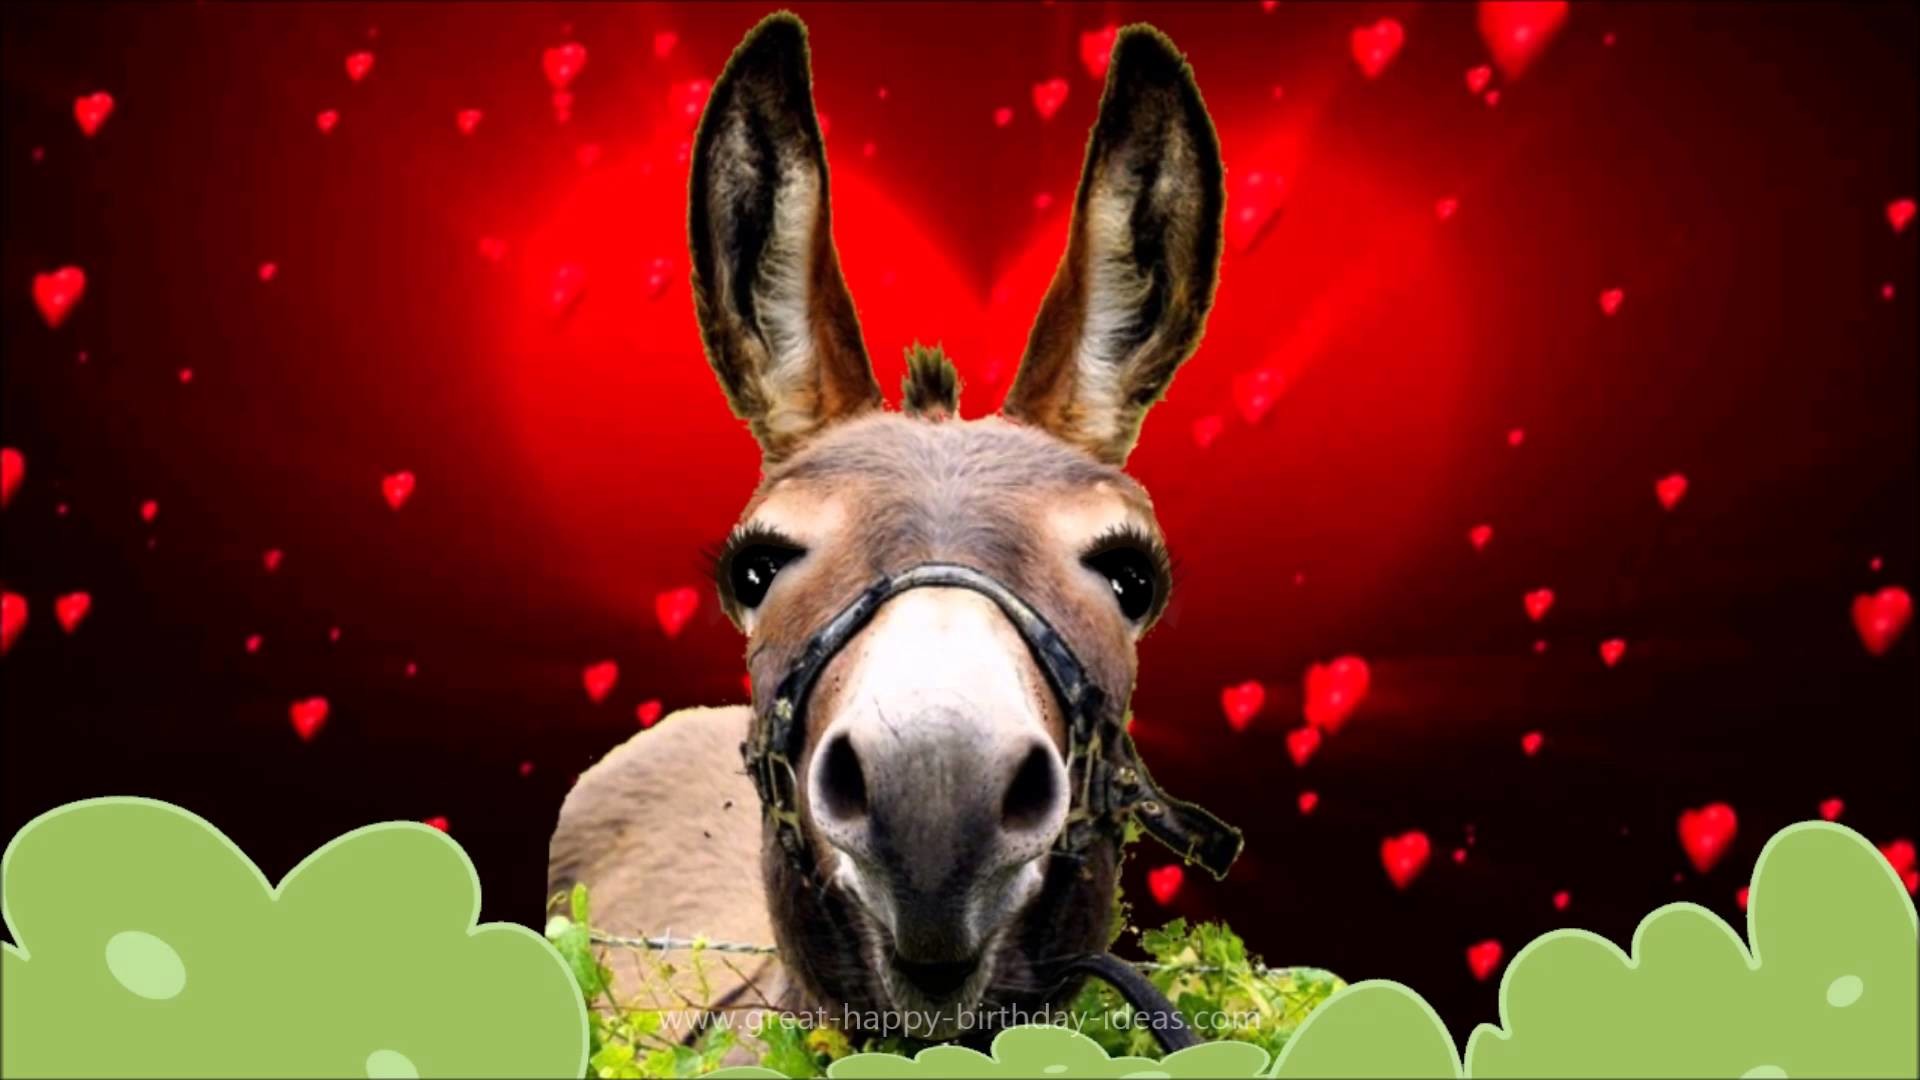 1920x1080 Donkey's Valentines Day Wish â¡